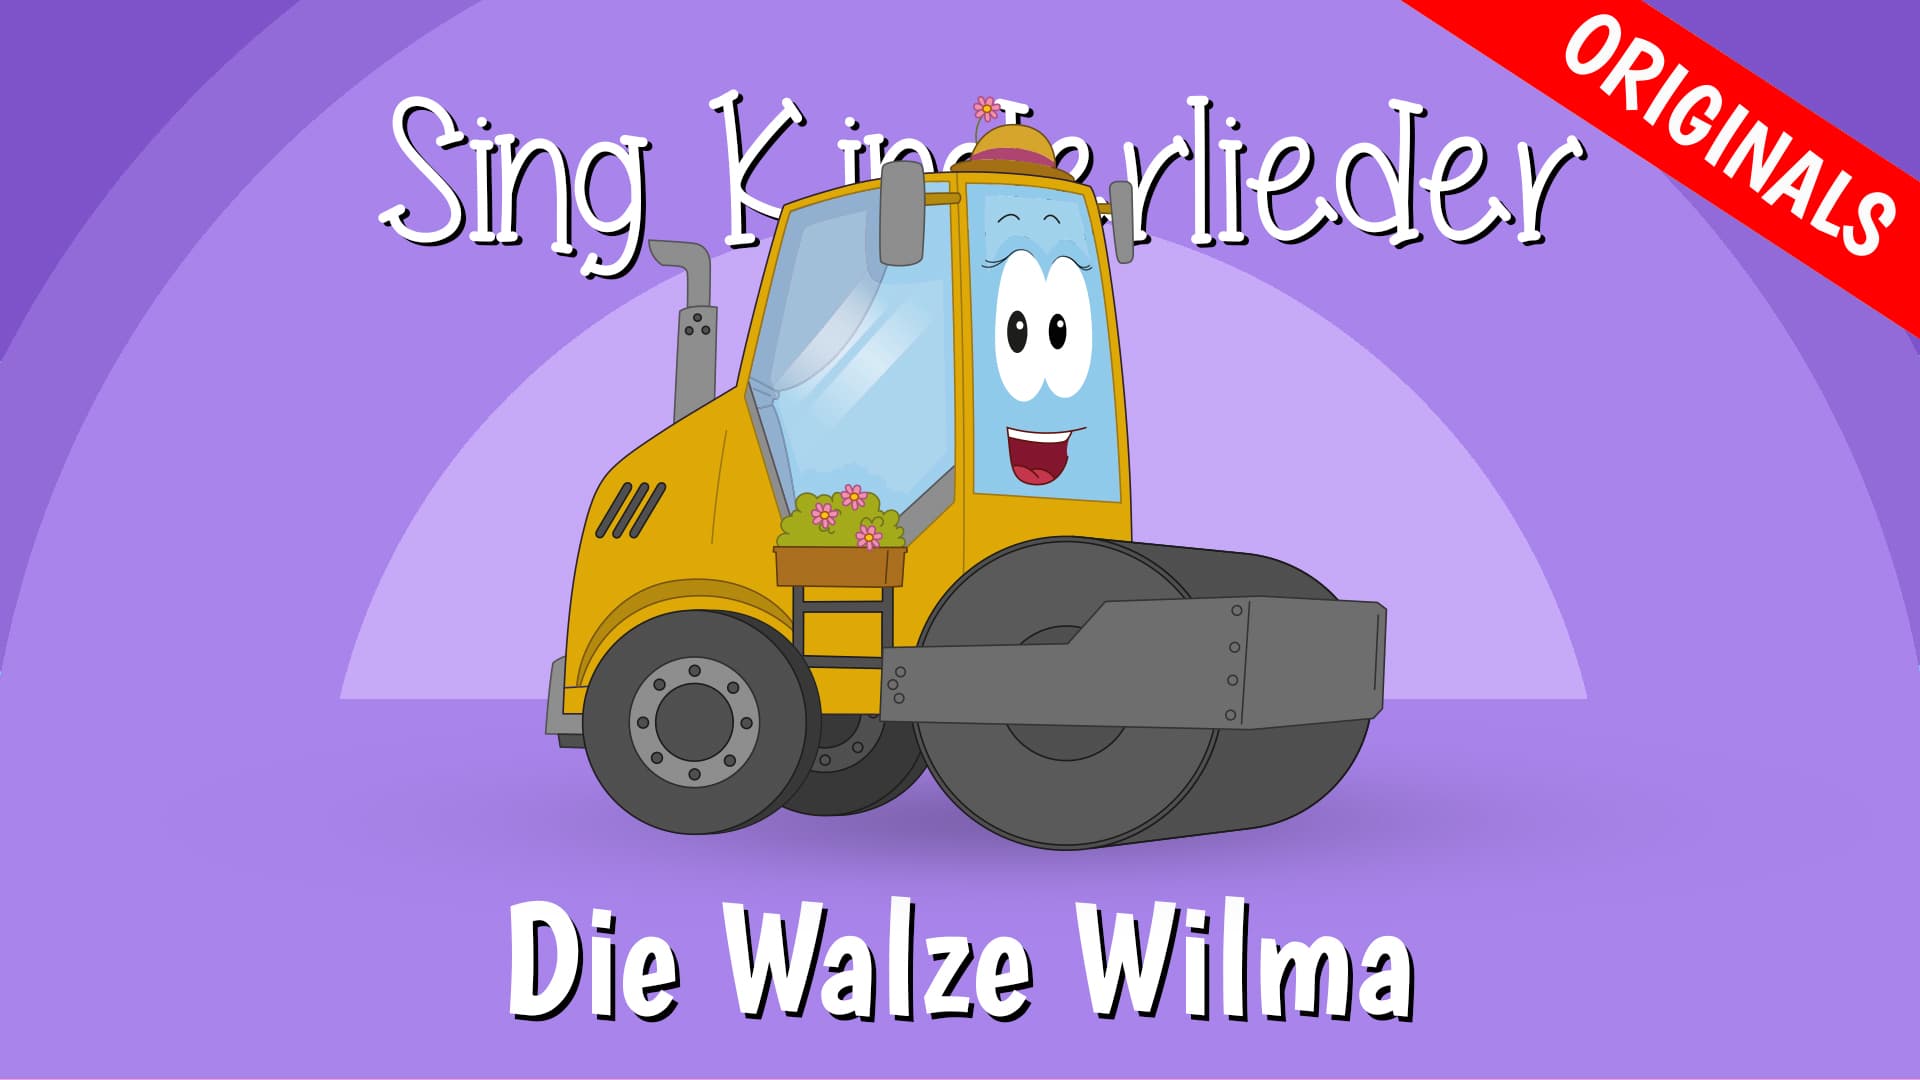 Die Walze Wilma